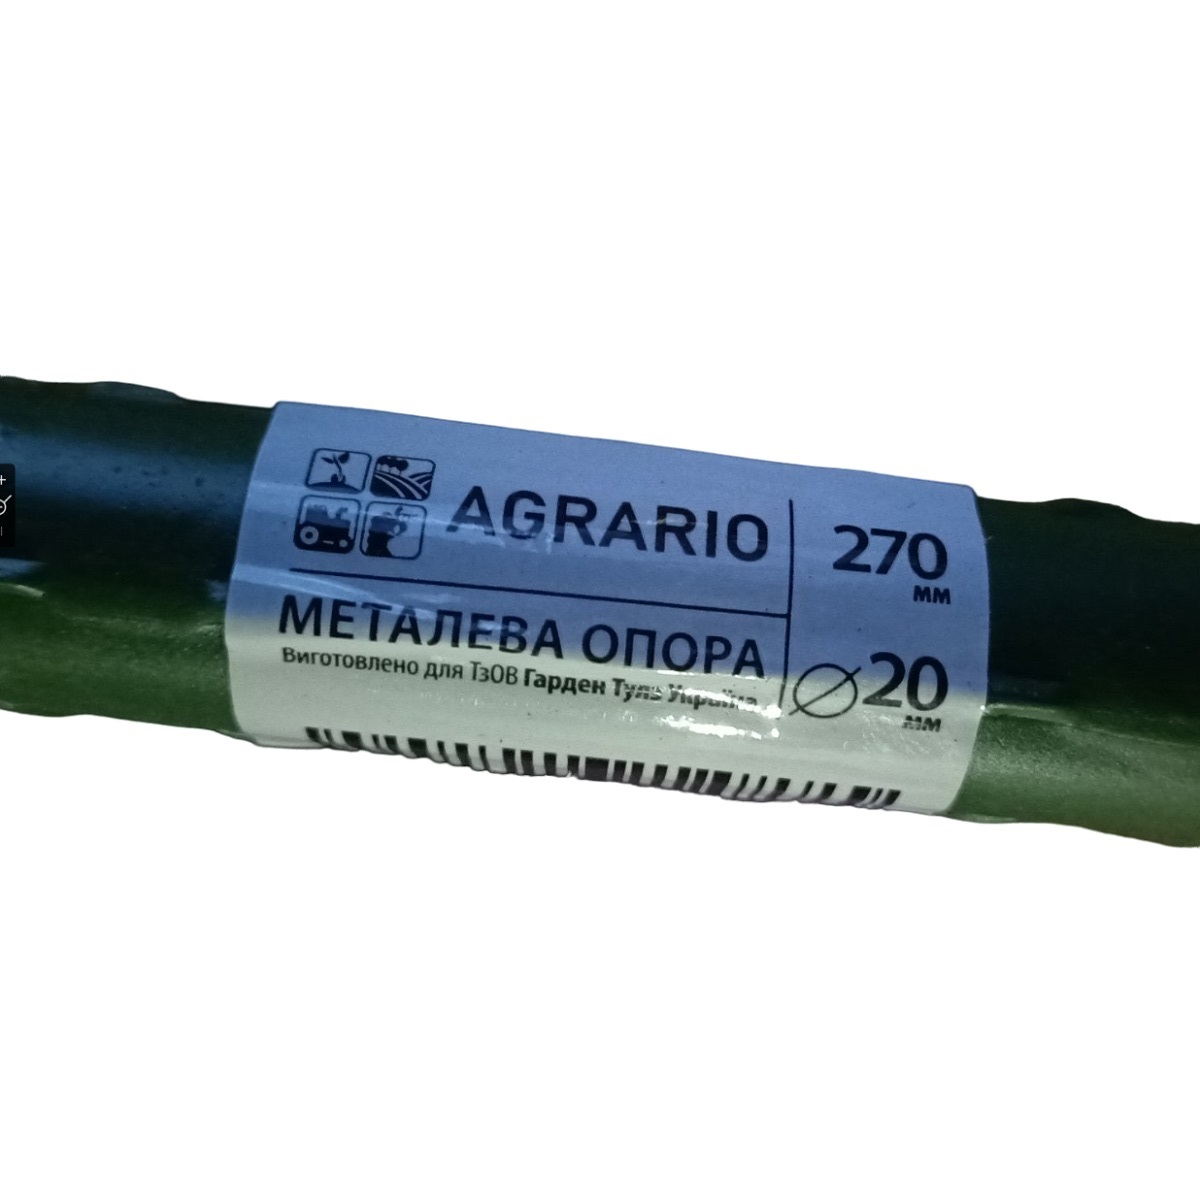 Металева опора для рослин Agrario 8-120 з пластиковим покриттям 8 мм х 1,2 м / Аграріо 8-120